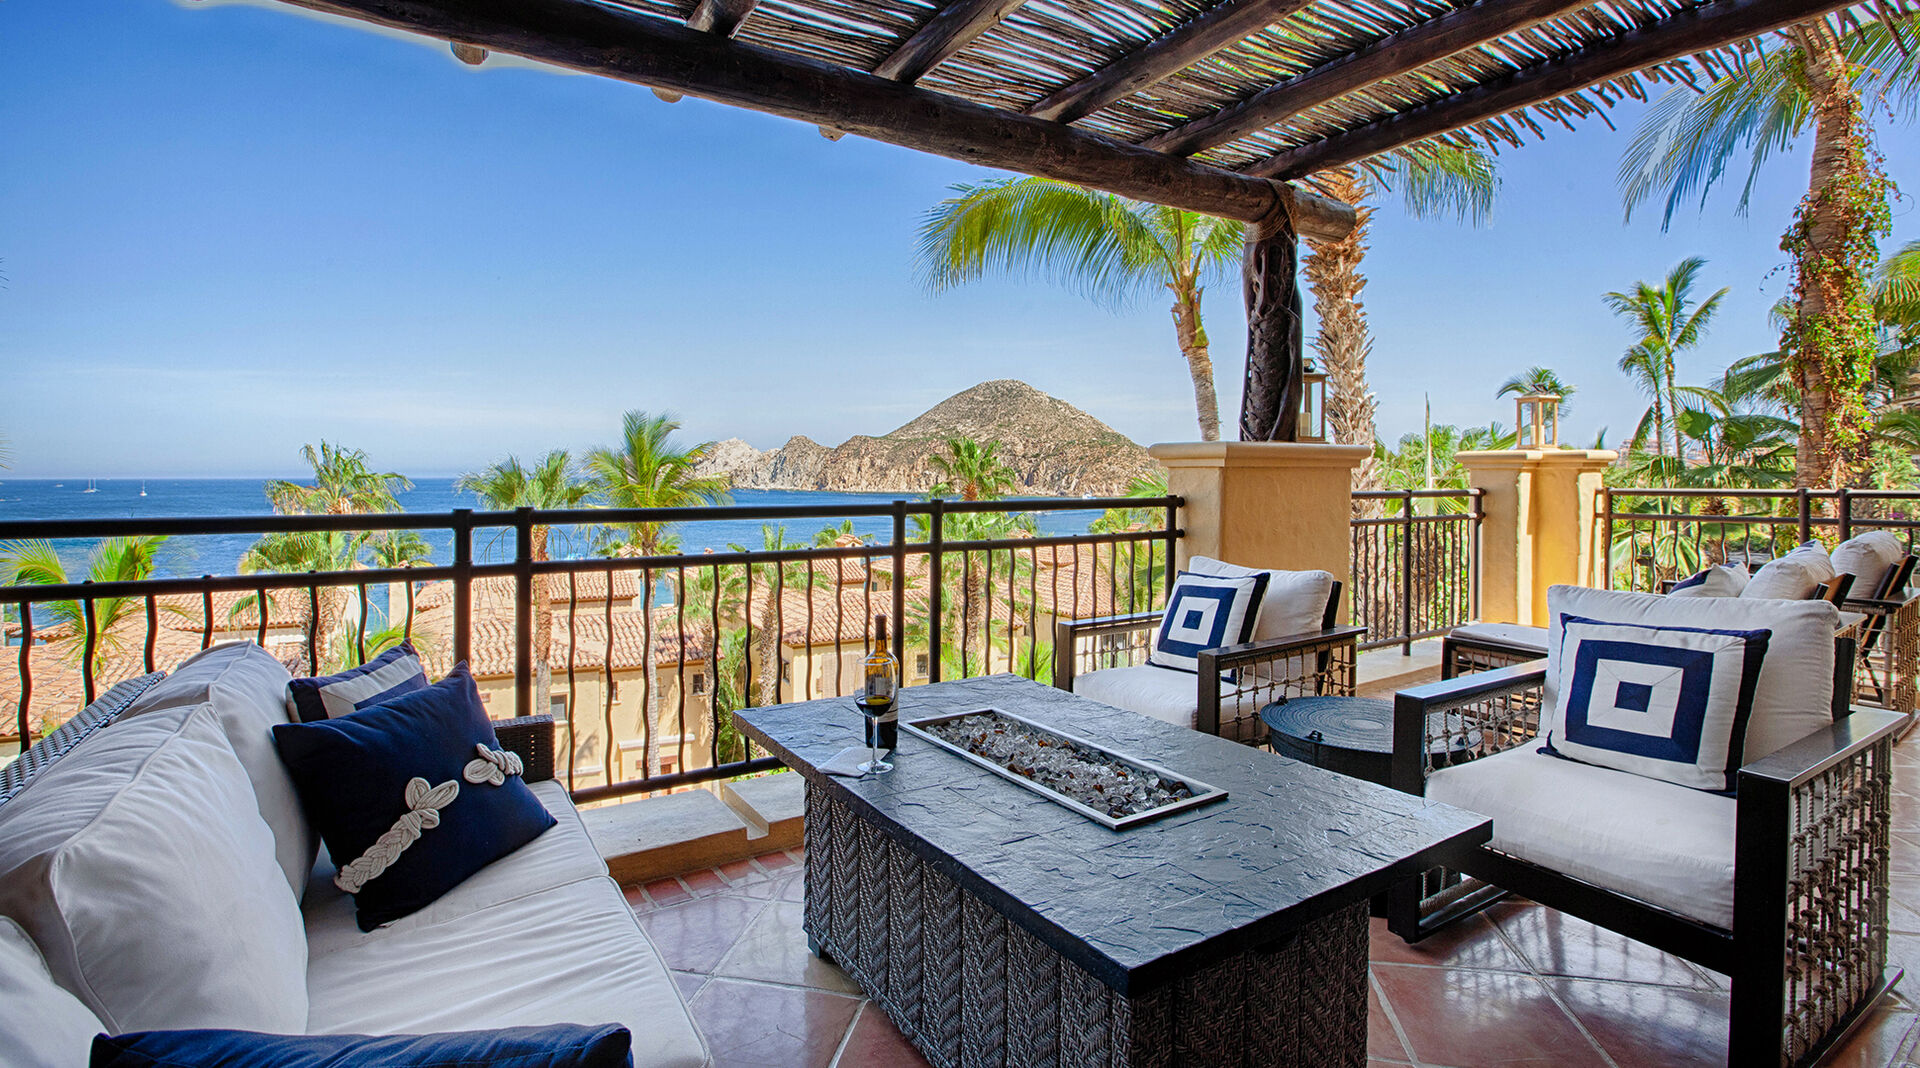 Hacienda Beach Club 1203: 4 Bedroom Vacation Rental Property in Cabo